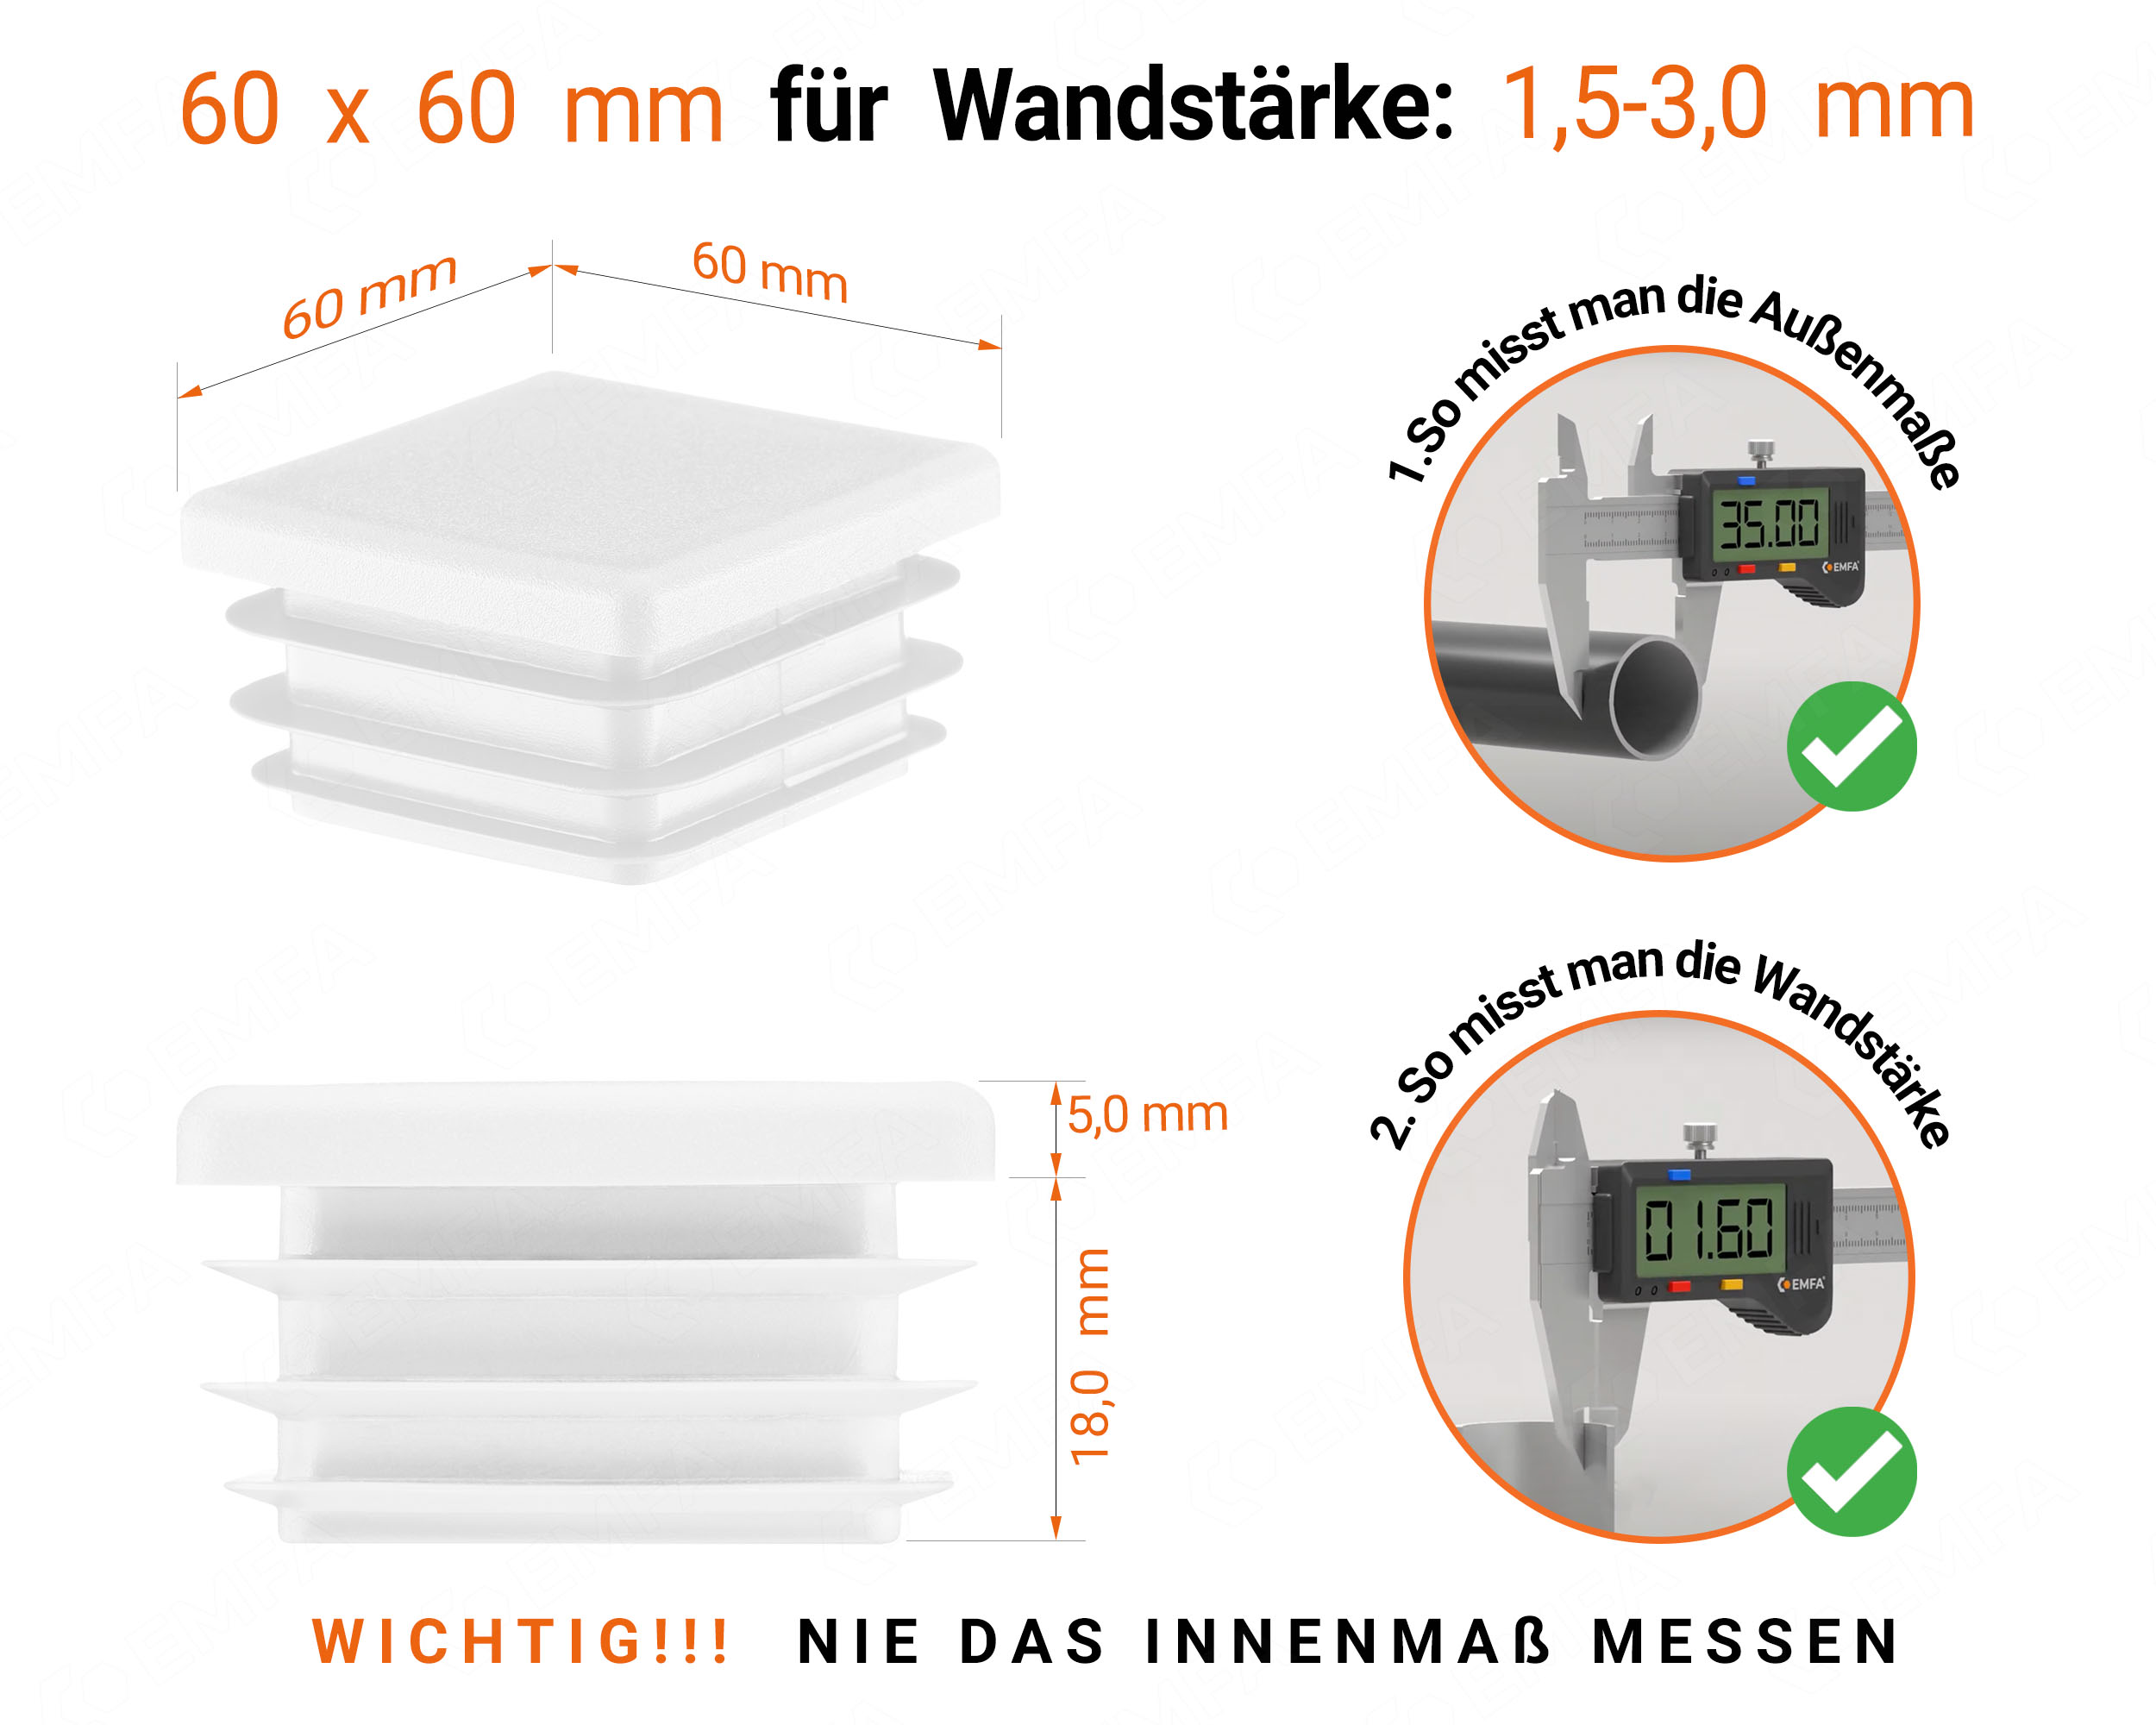 Weiße Endkappe für Vierkantrohre in der Größe 60x60 mm mit technischen Abmessungen und Anleitung für korrekte Messung